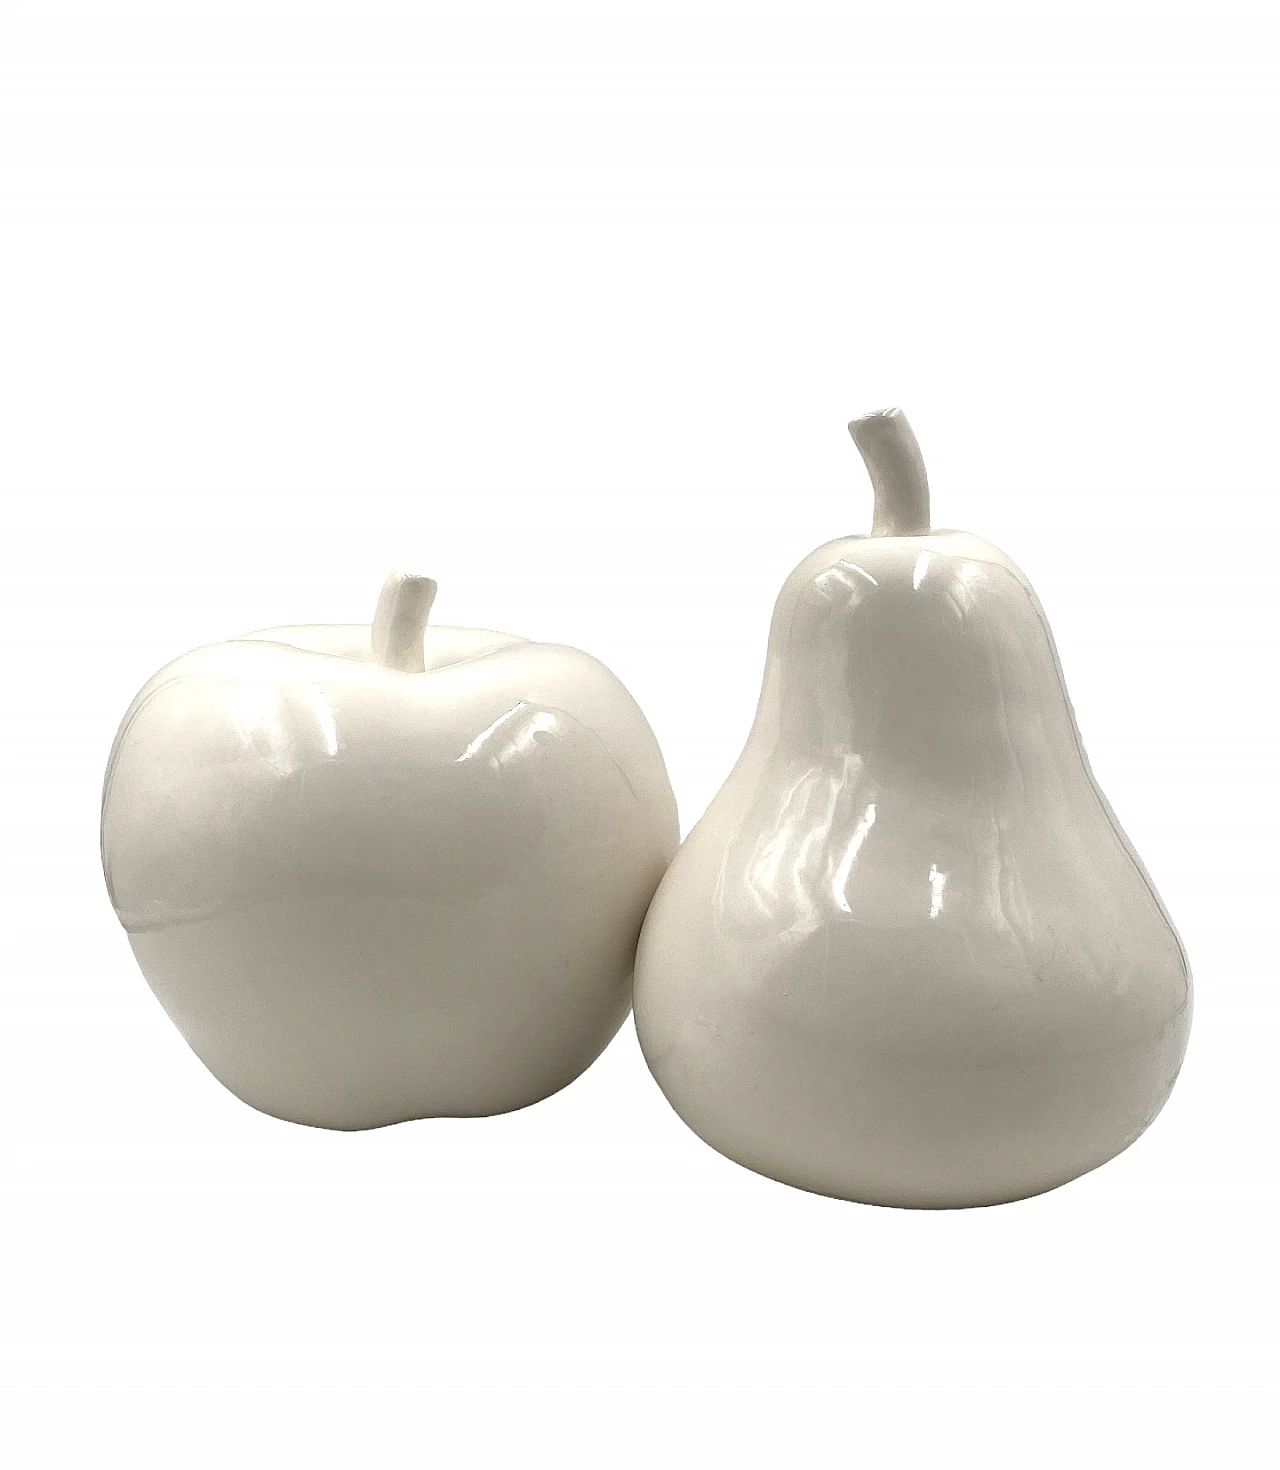 White ceramic apple & pear sculptures, 1980s 11